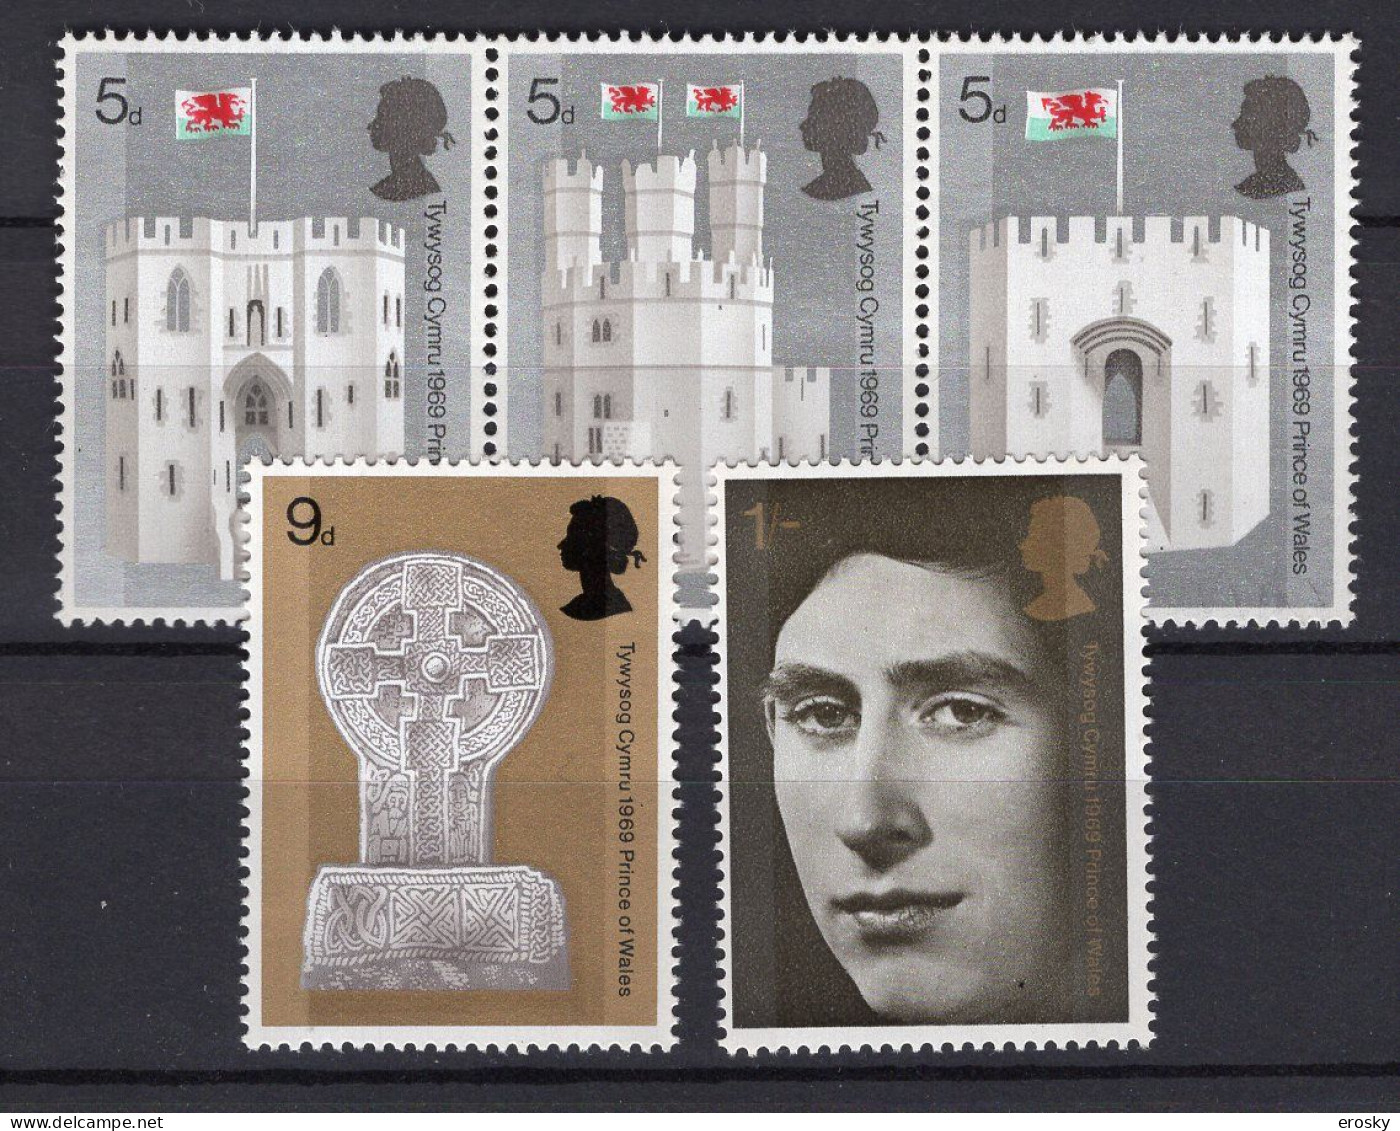 P2132 - GRANDE BRETAGNE Yv N°569/73 ** PRINCE OF WALES - Unused Stamps